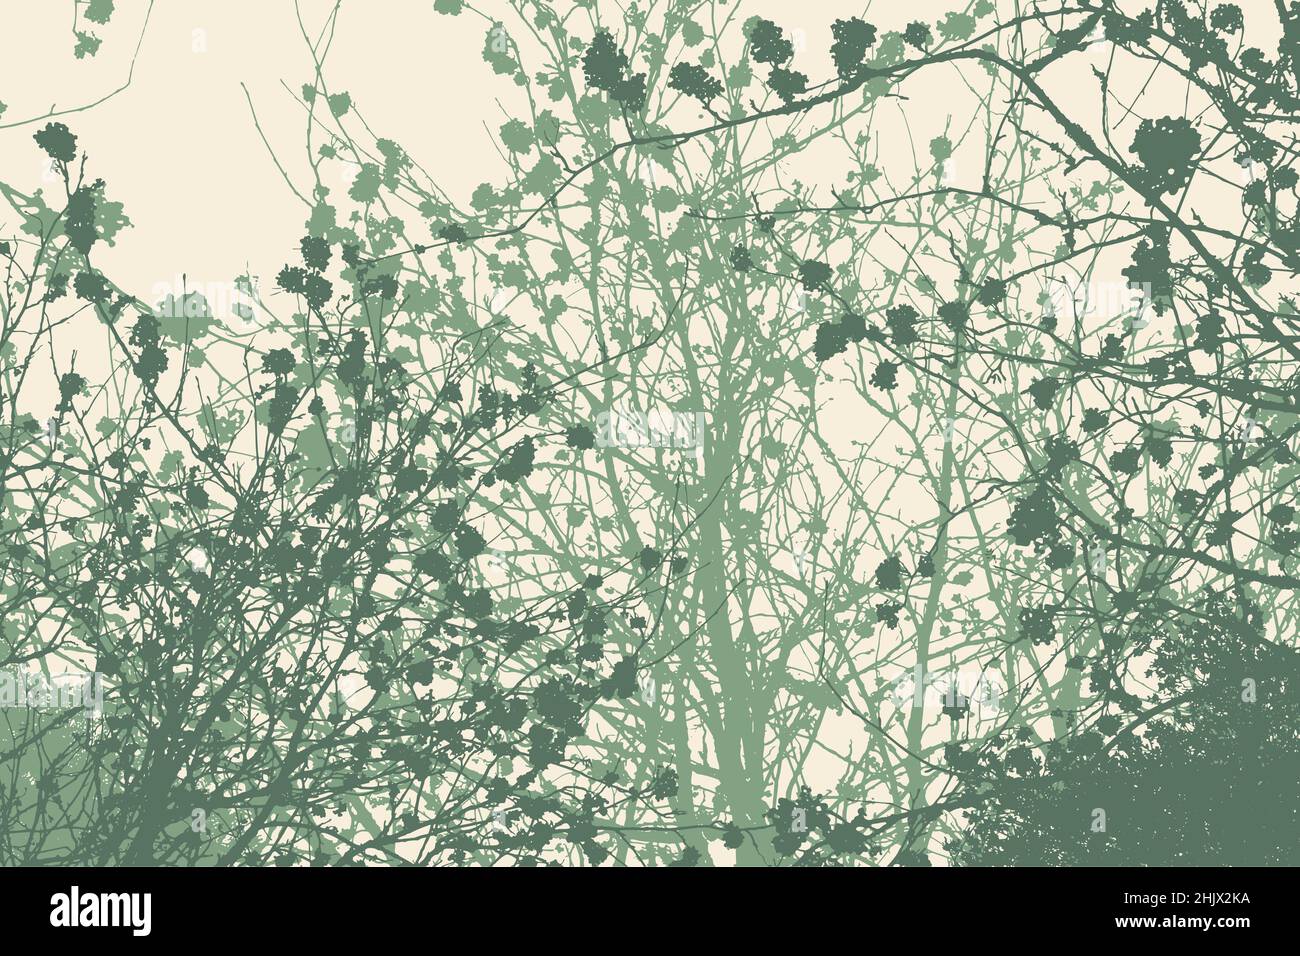 Silhouette von Zweigen mit Beeren. Detaillierte Vektorgrafik Stock Vektor